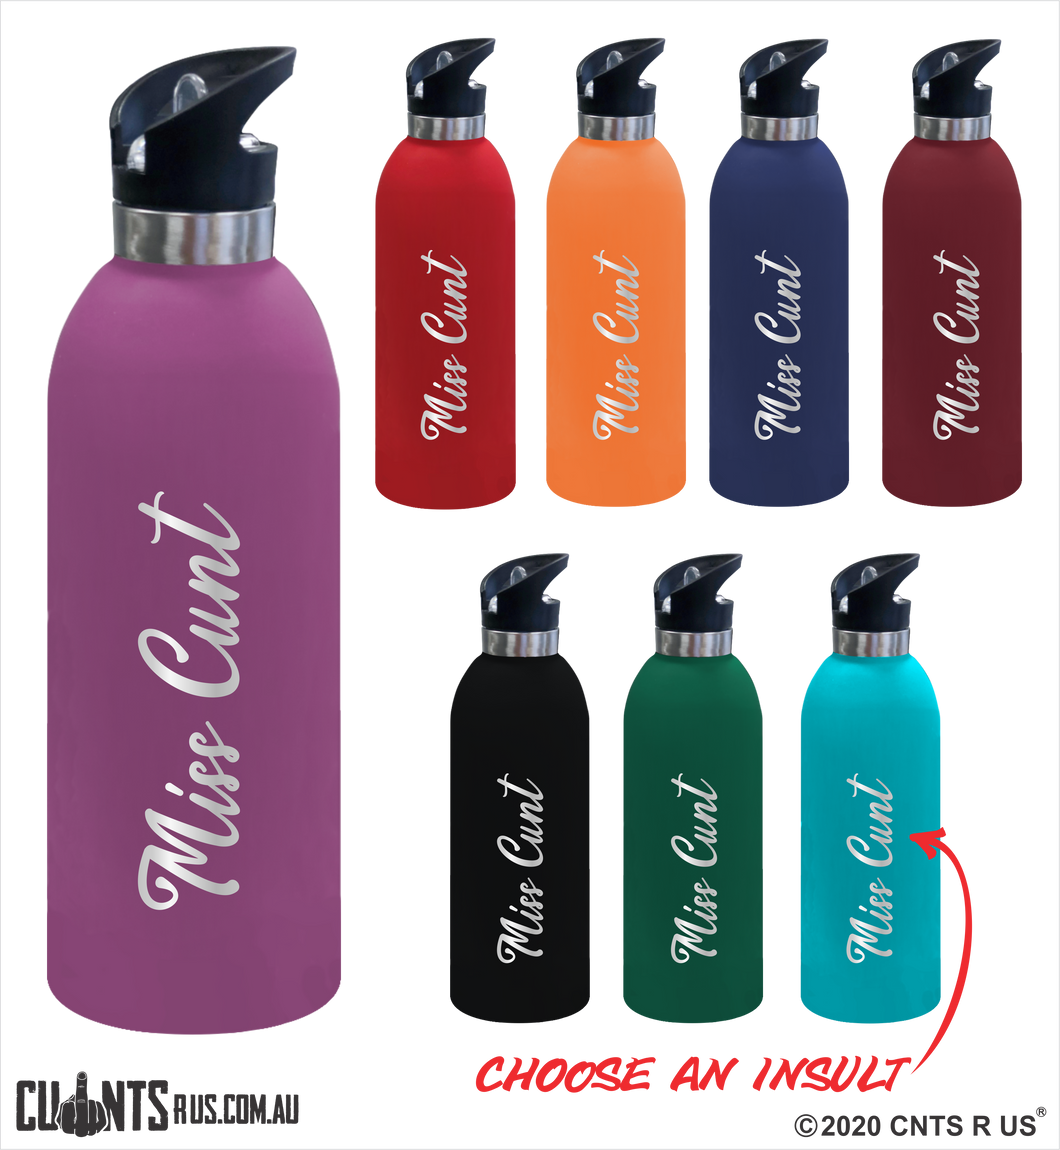 Miss Cunt 1 Litre Drink Bottle Laser Engraved Gift - CRU08-68-21003